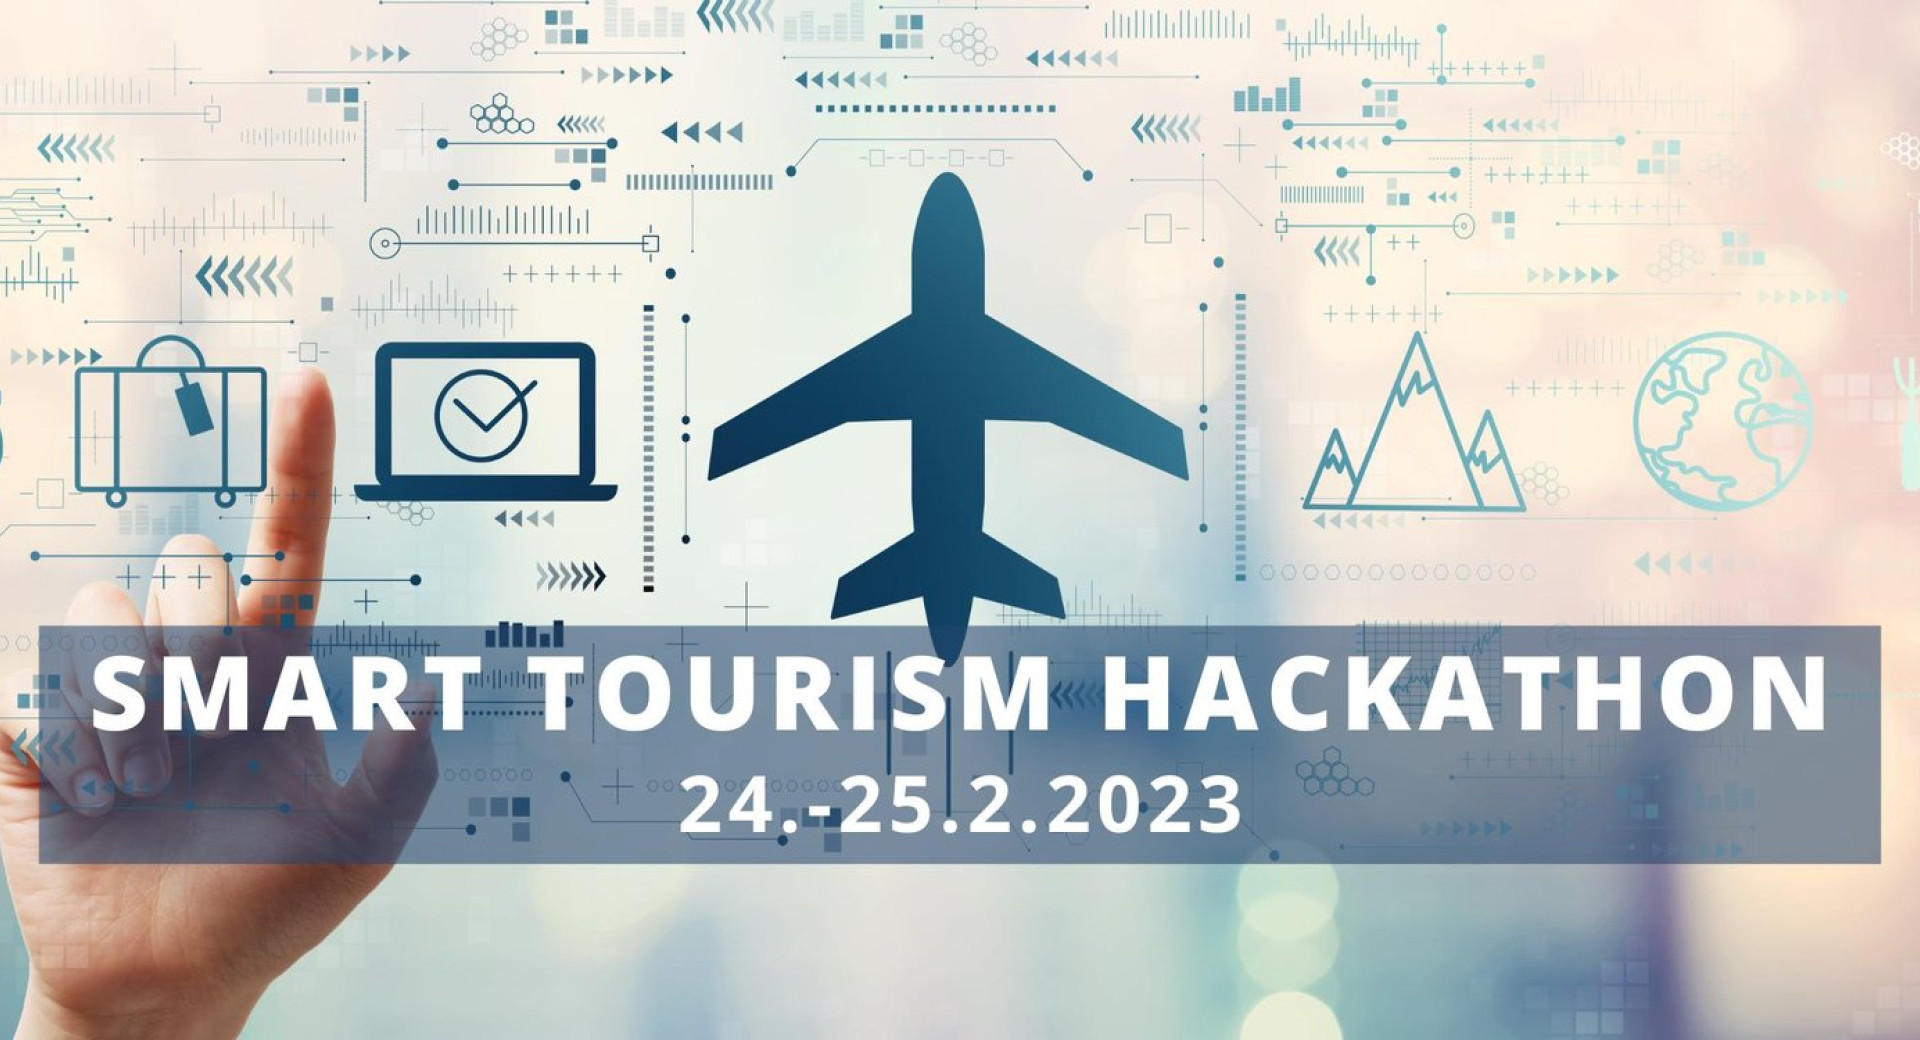 Smart Tourism Hackathon: iskanje pametnih rešitev v turizmu, 24. in 25.2.2023 v Ljubljani